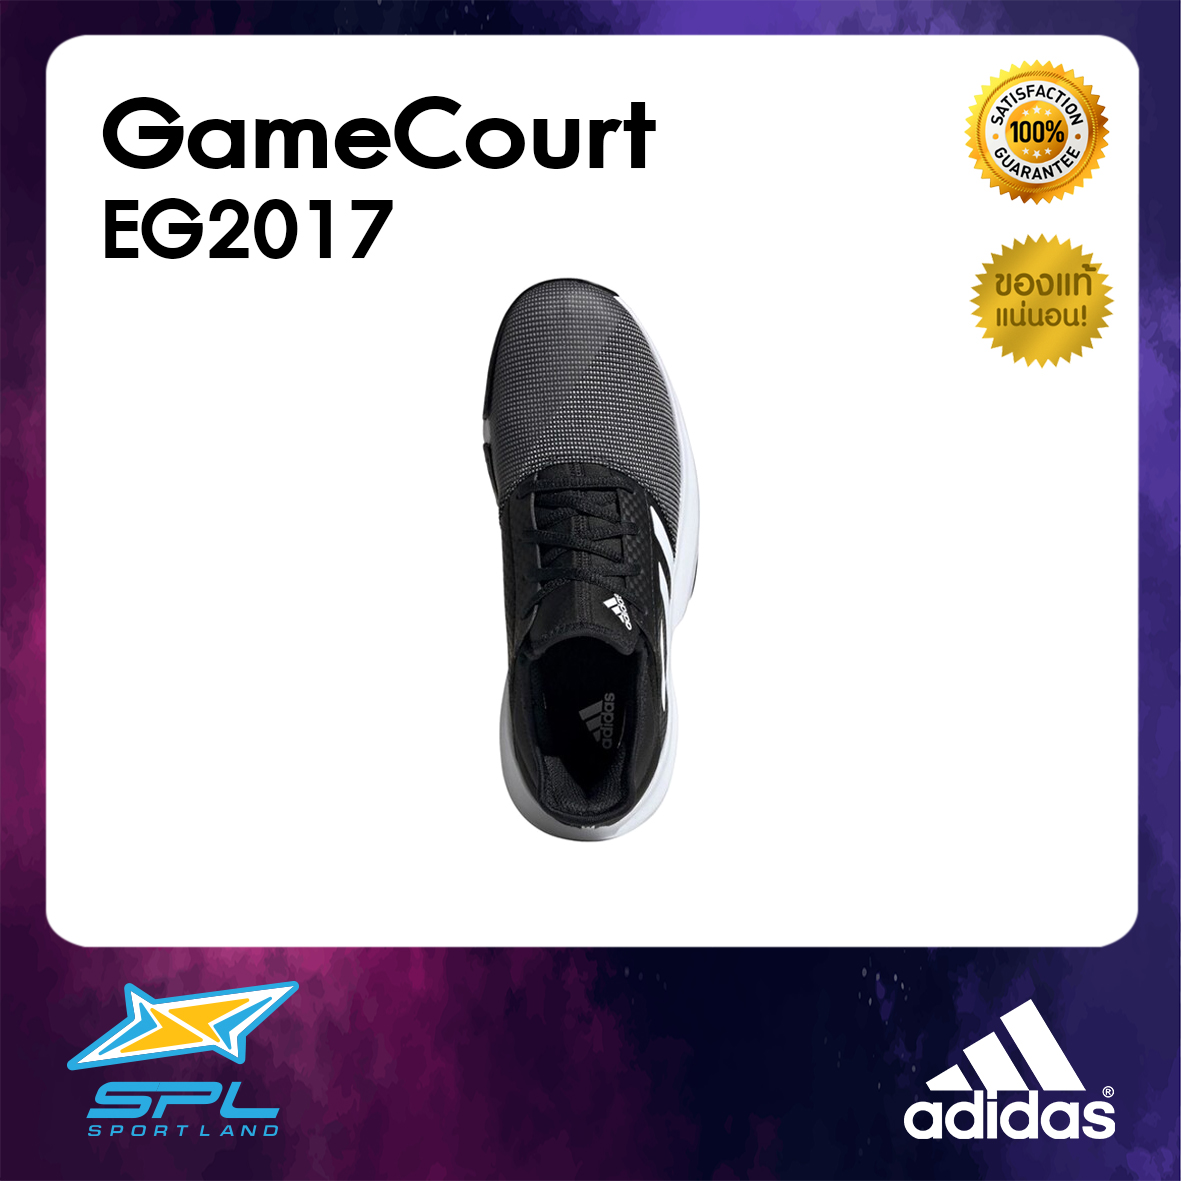 Adidas รองเท้าเทนนิส อาดิดาส รองเท้ากีฬา ผู้หญิง Tennis Women Shoe GameCourt EG2017 (2300)